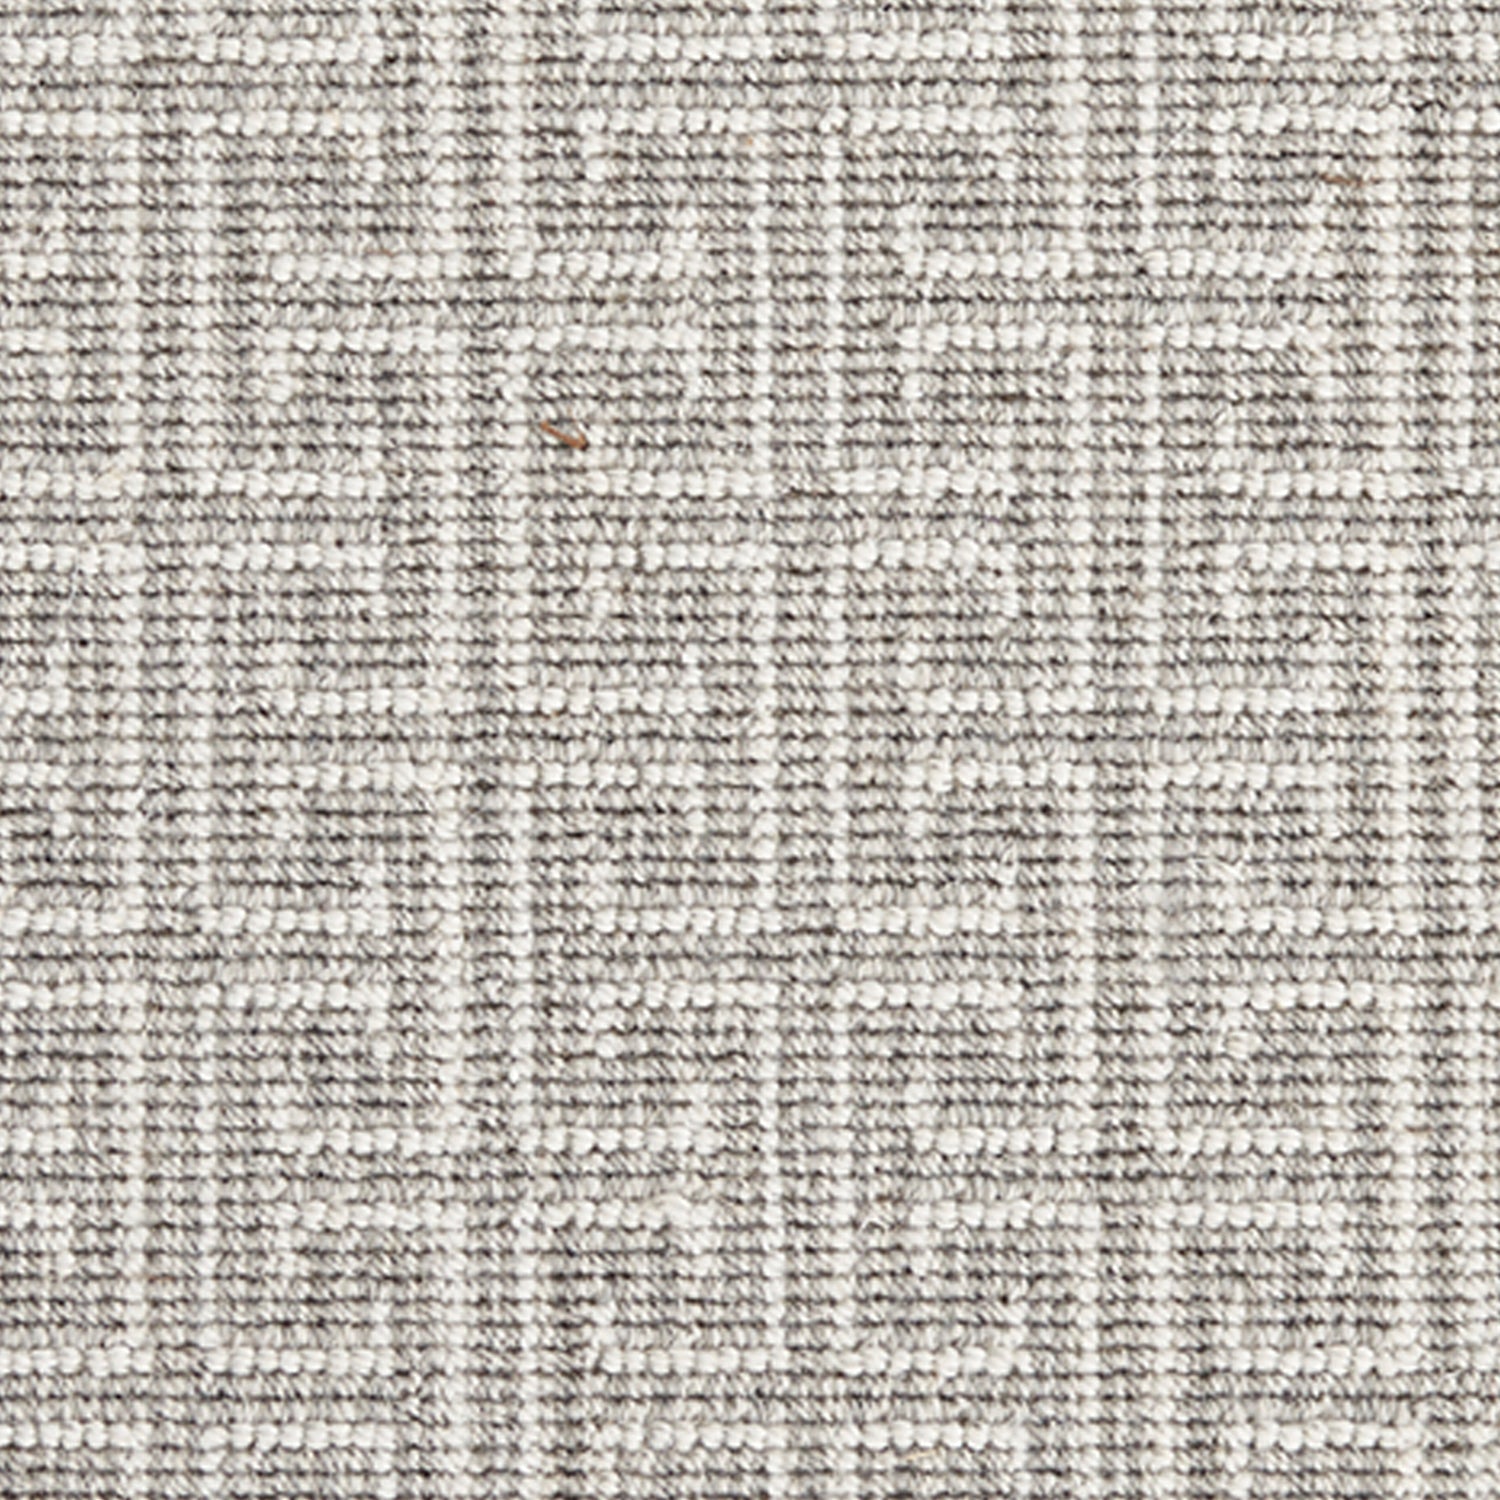 Wool-blend broadloom carpet swatch in an interlocking linear print in gray on a white field.